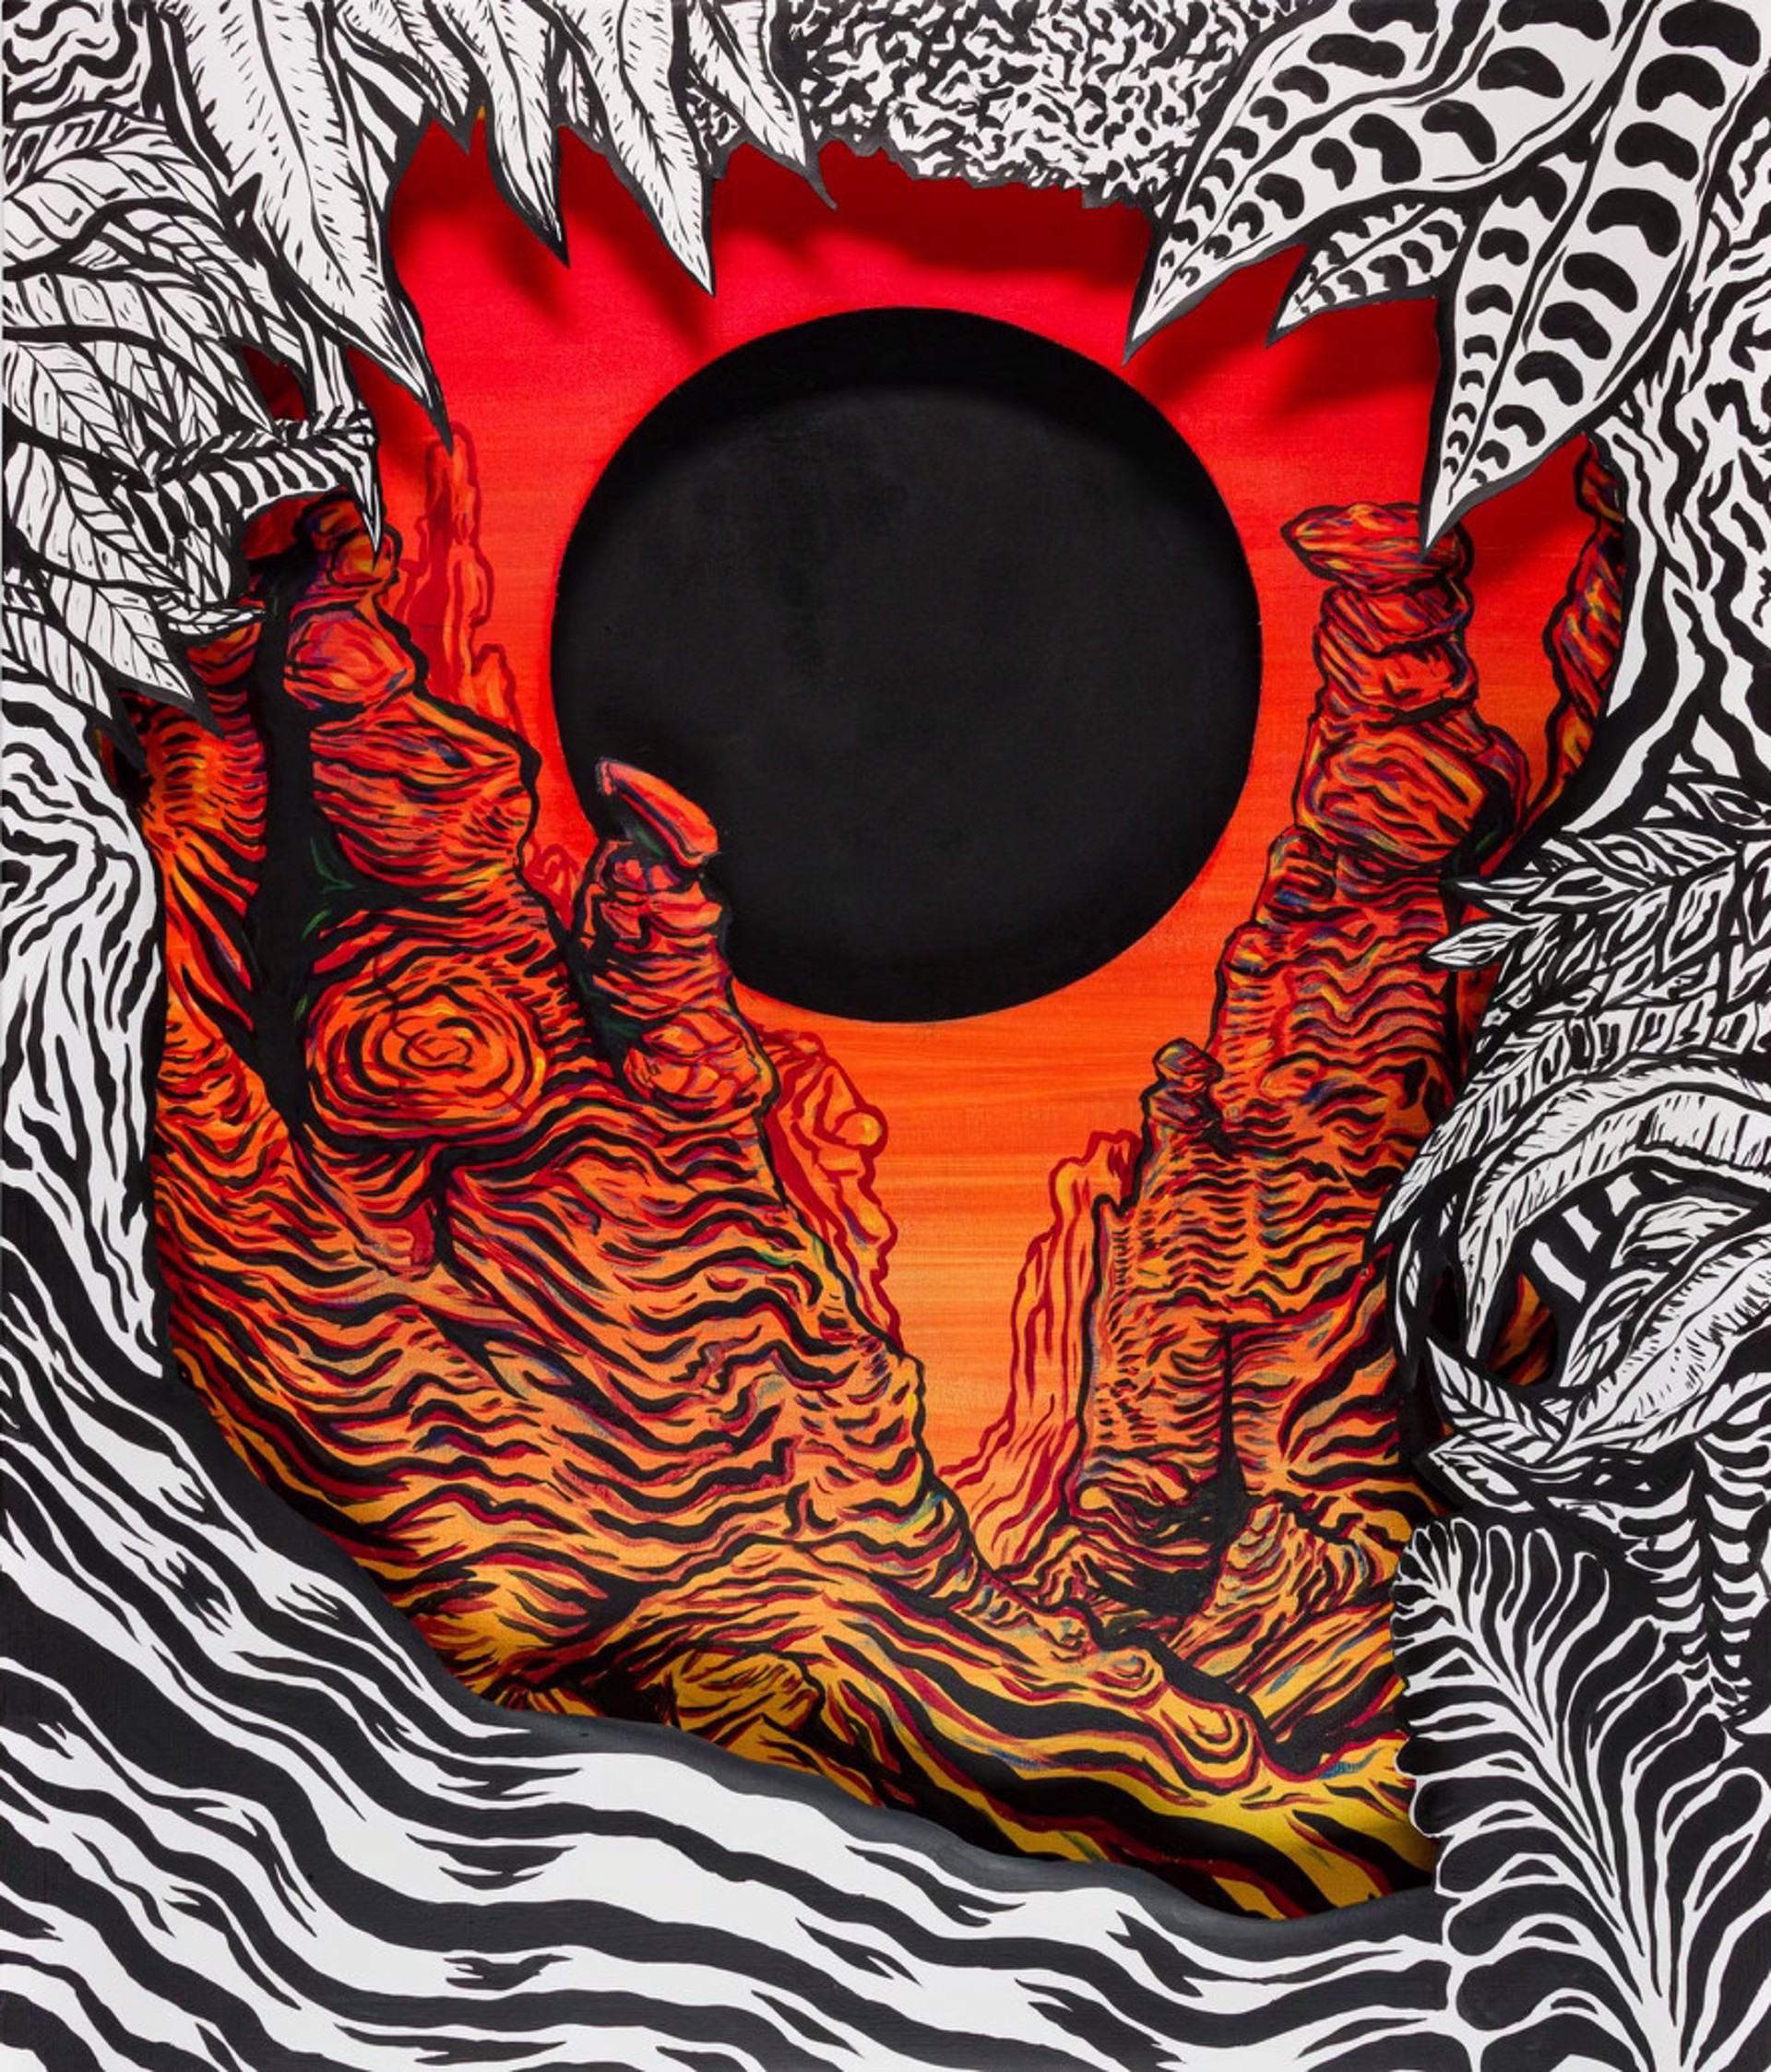 Black Sun Canyon by Todd Ryan White